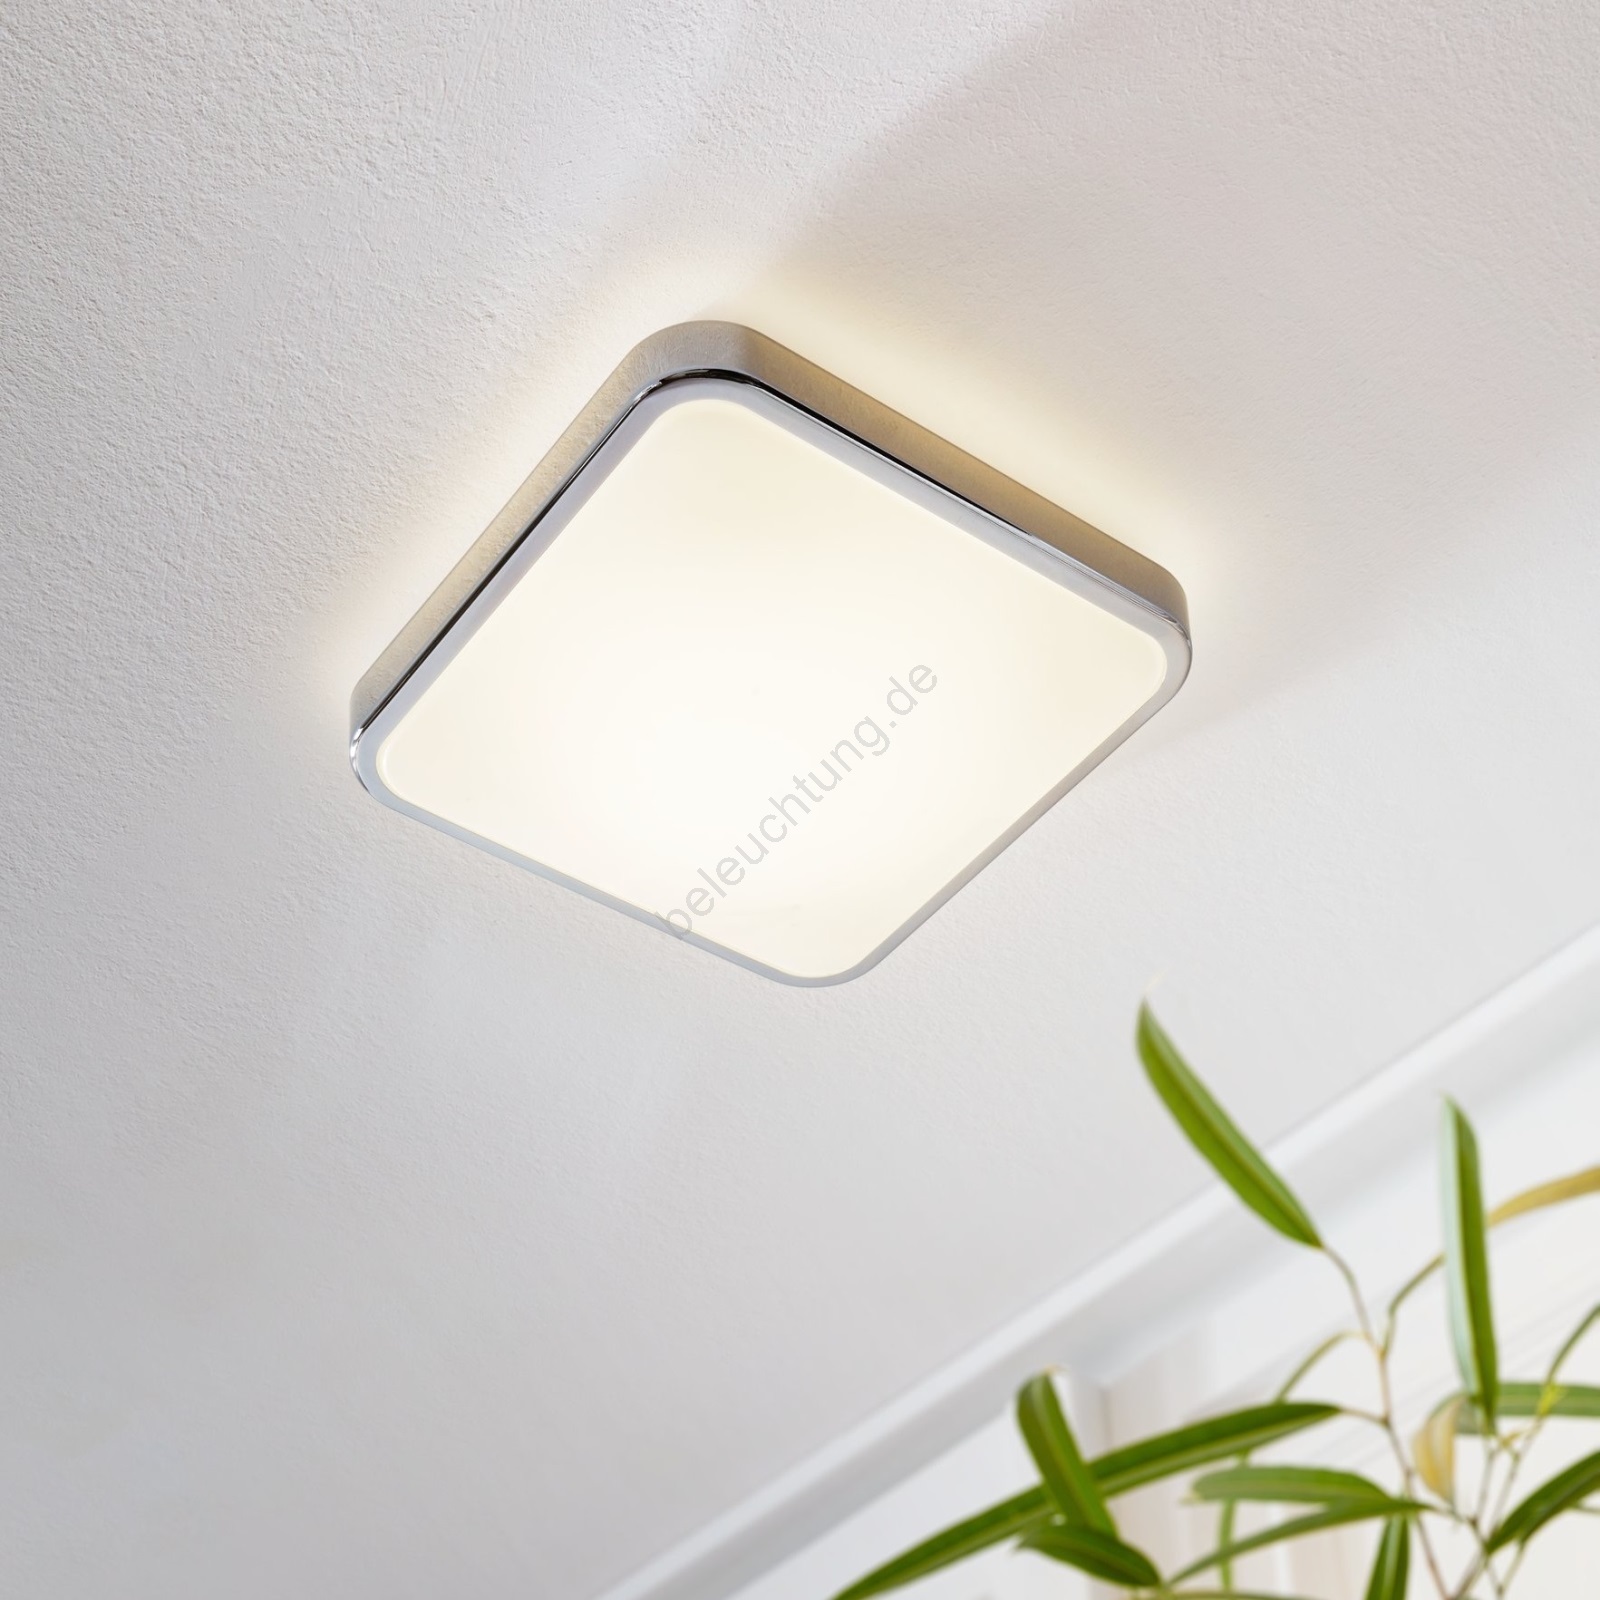 Светодиодные потолочные светильники для дома: Светодиодные потолочные светильники LED - купить потолочный лед светильник